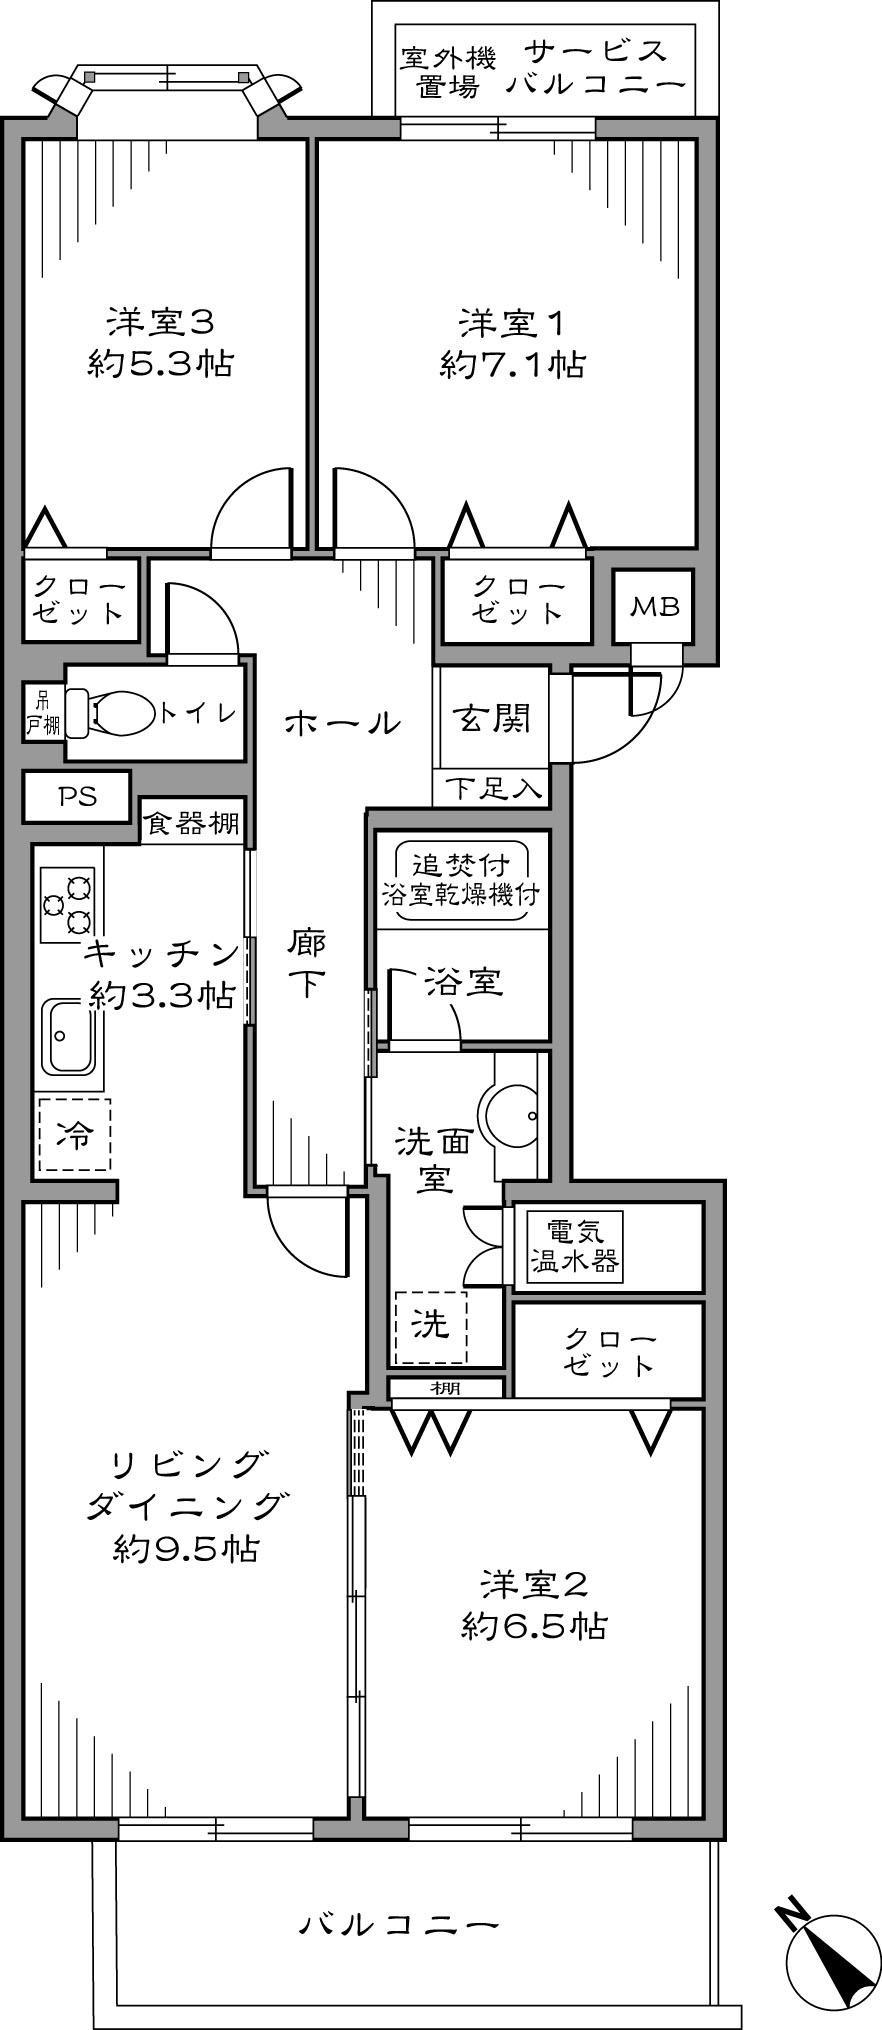 Floor plan. 3LDK 74.90 sq m